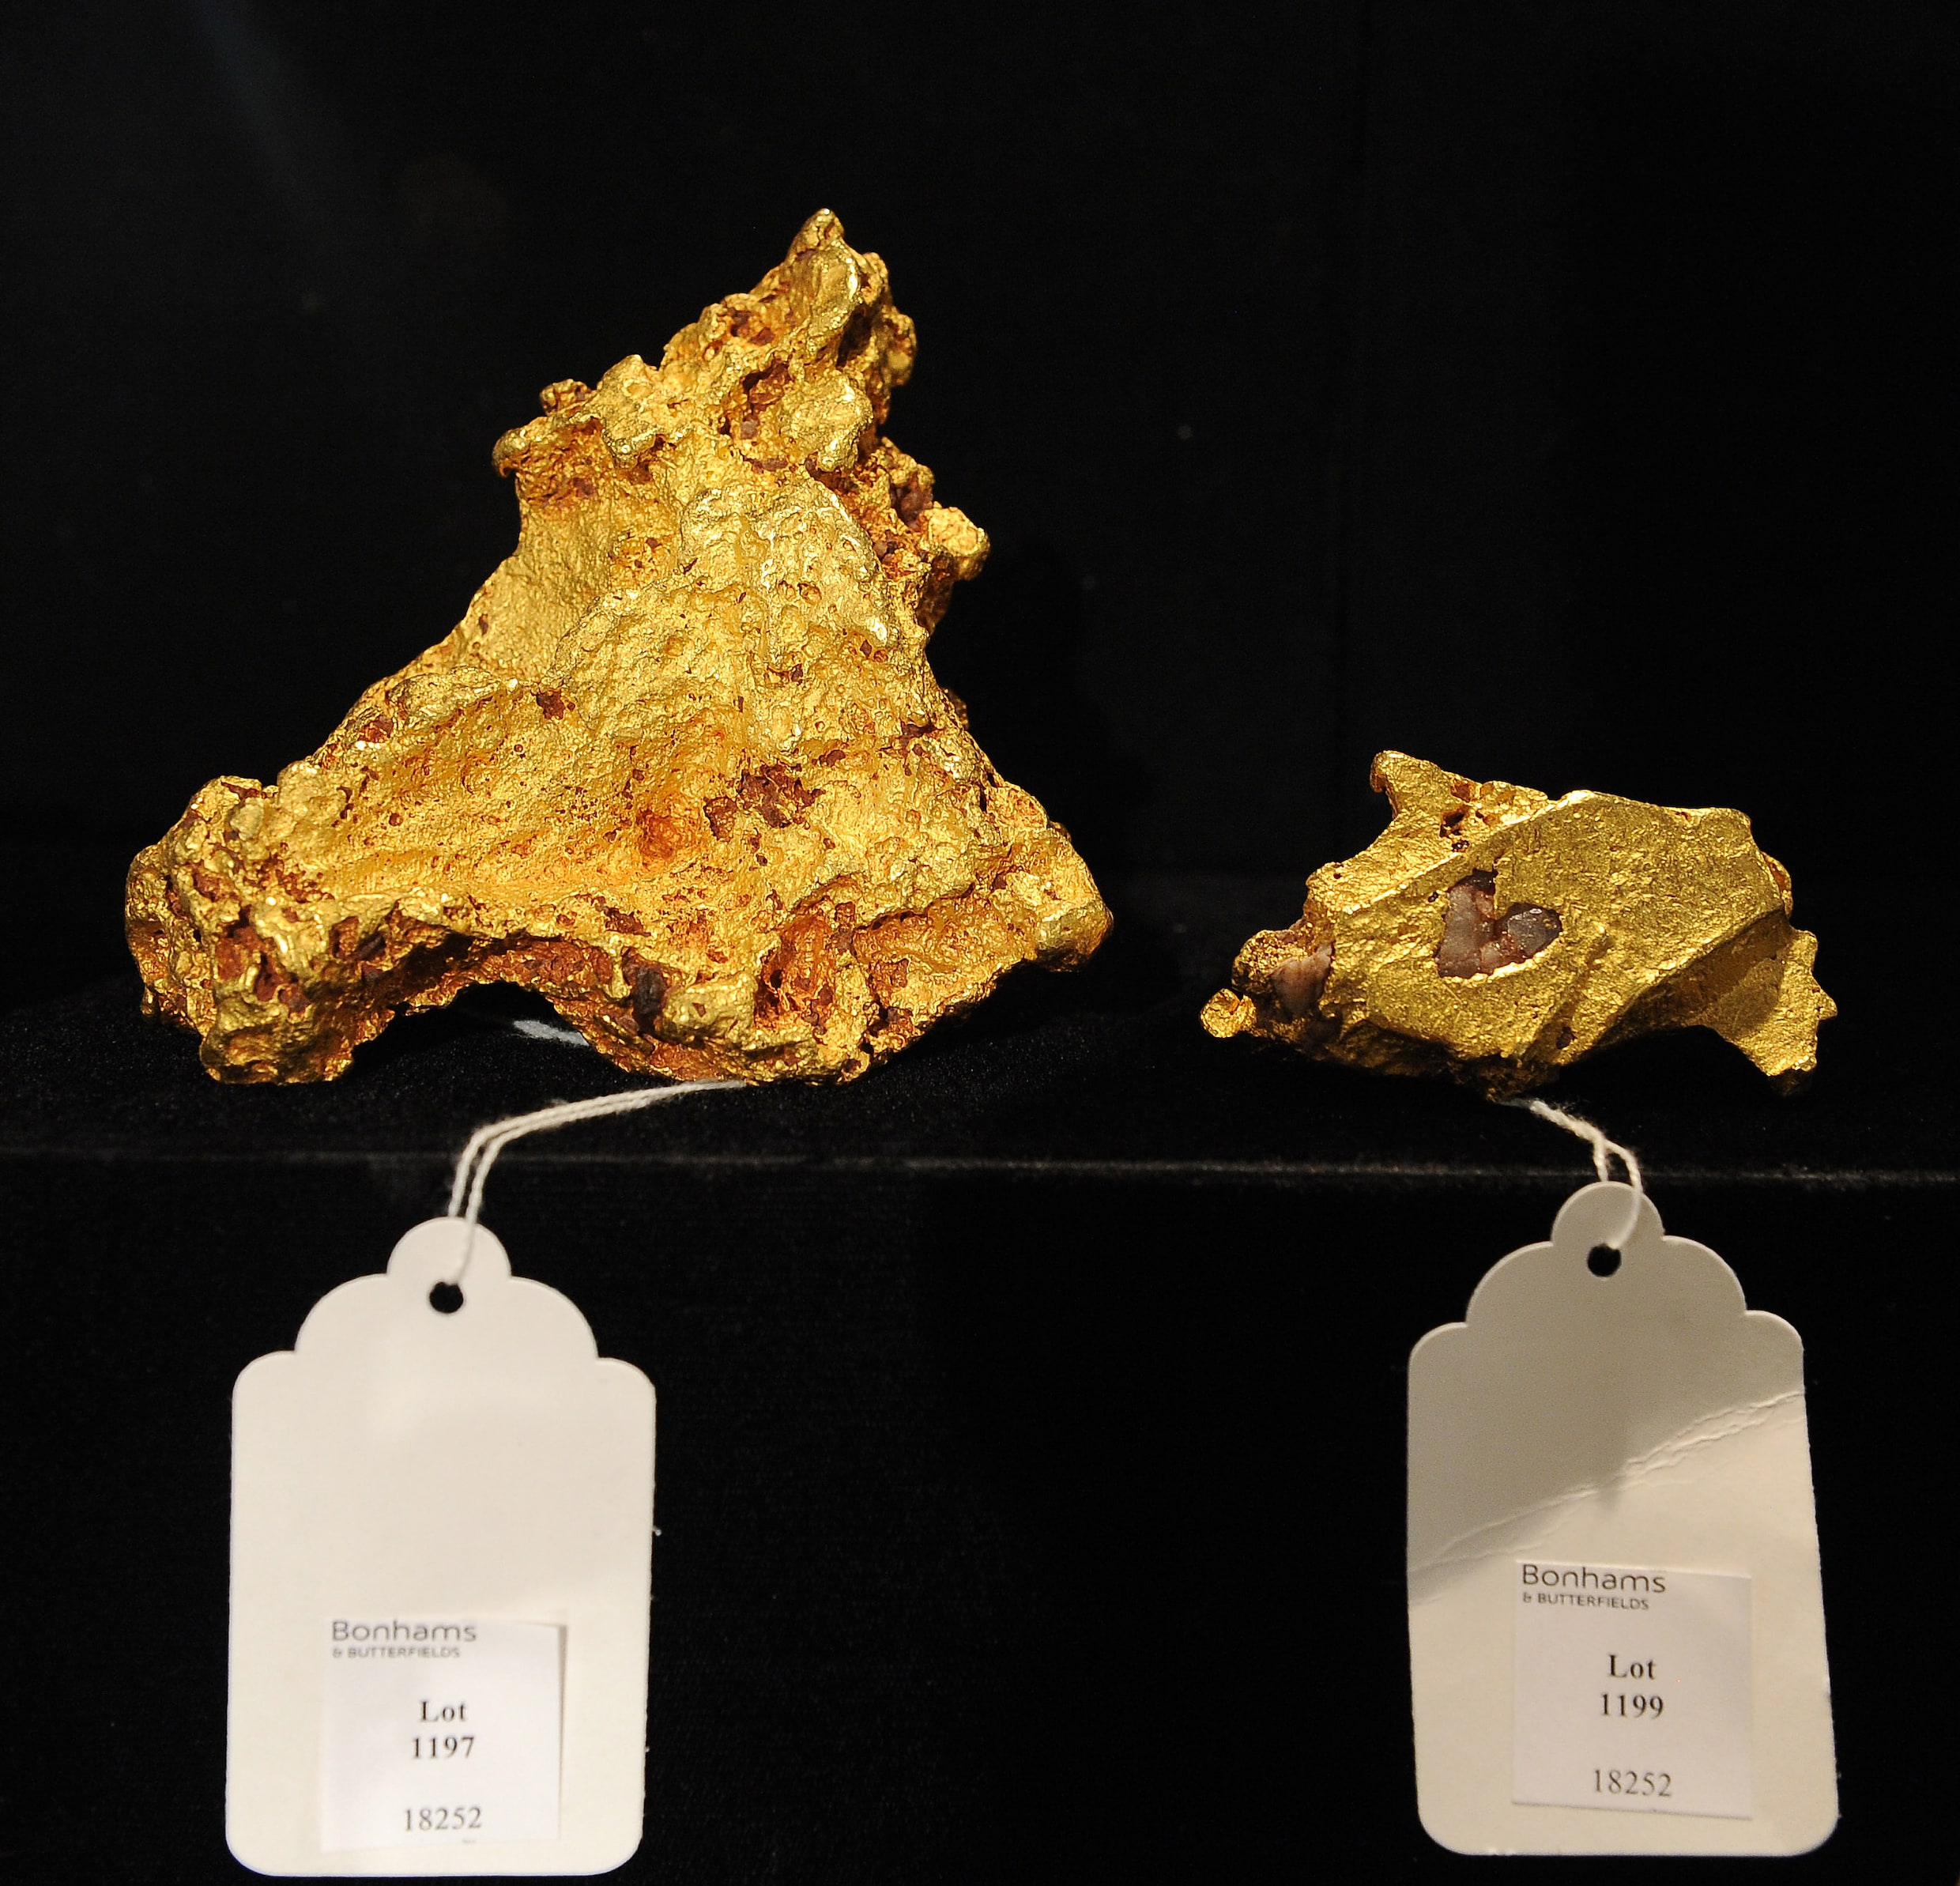 Gouder dan goud: nieuw soort goudkristal ontdekt dat harder glimt